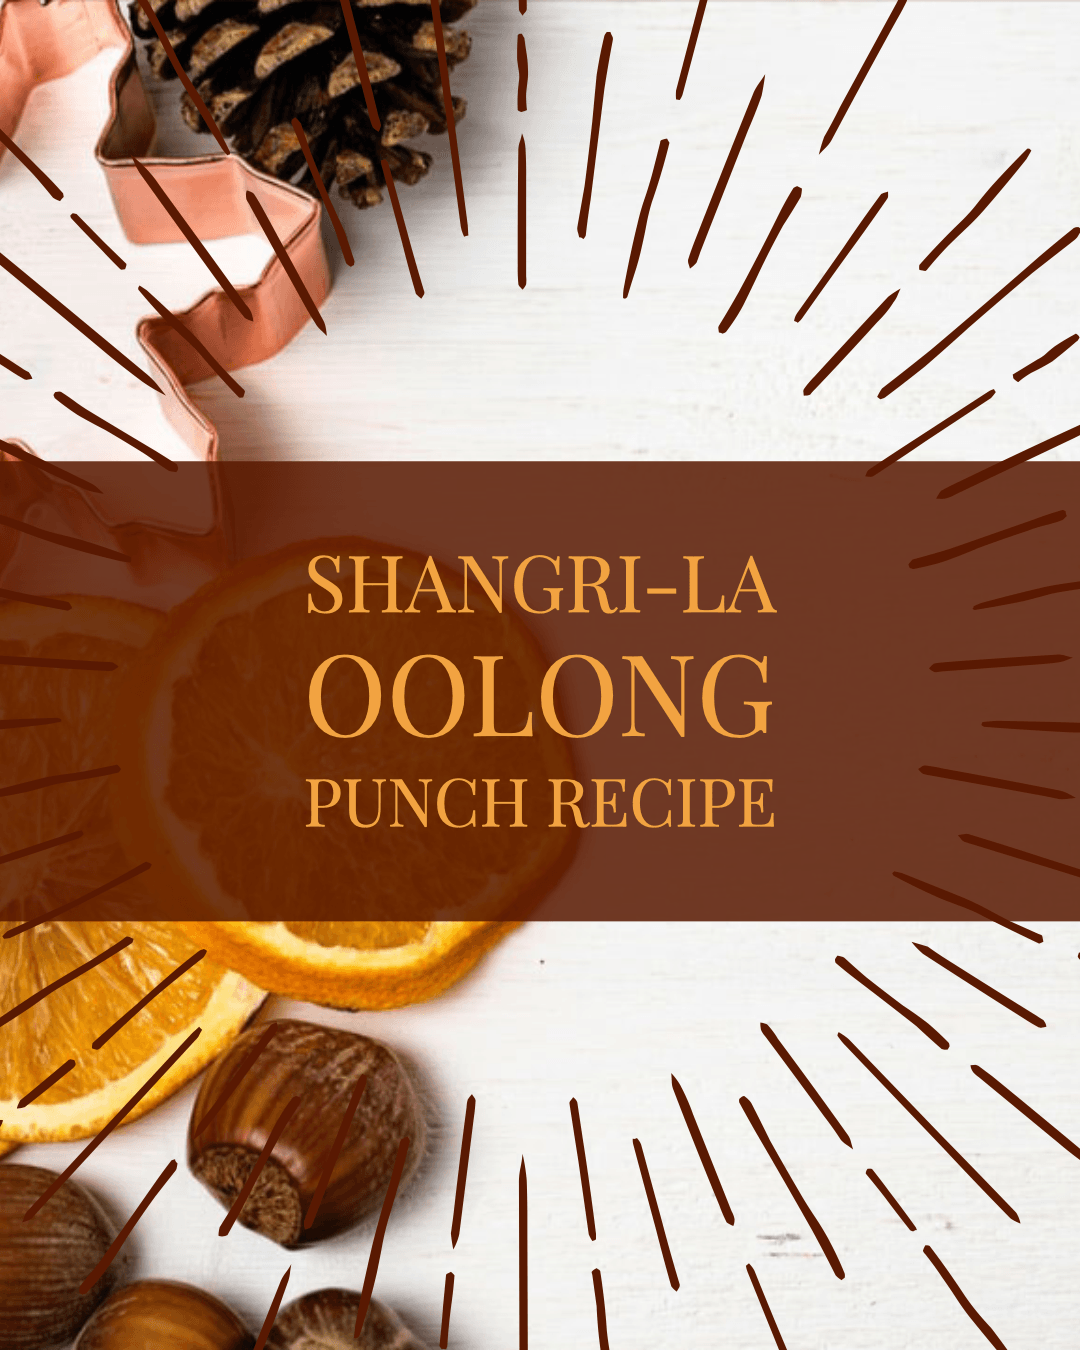 Shangri-La Oolong Punch Recipe - Nepal Tea